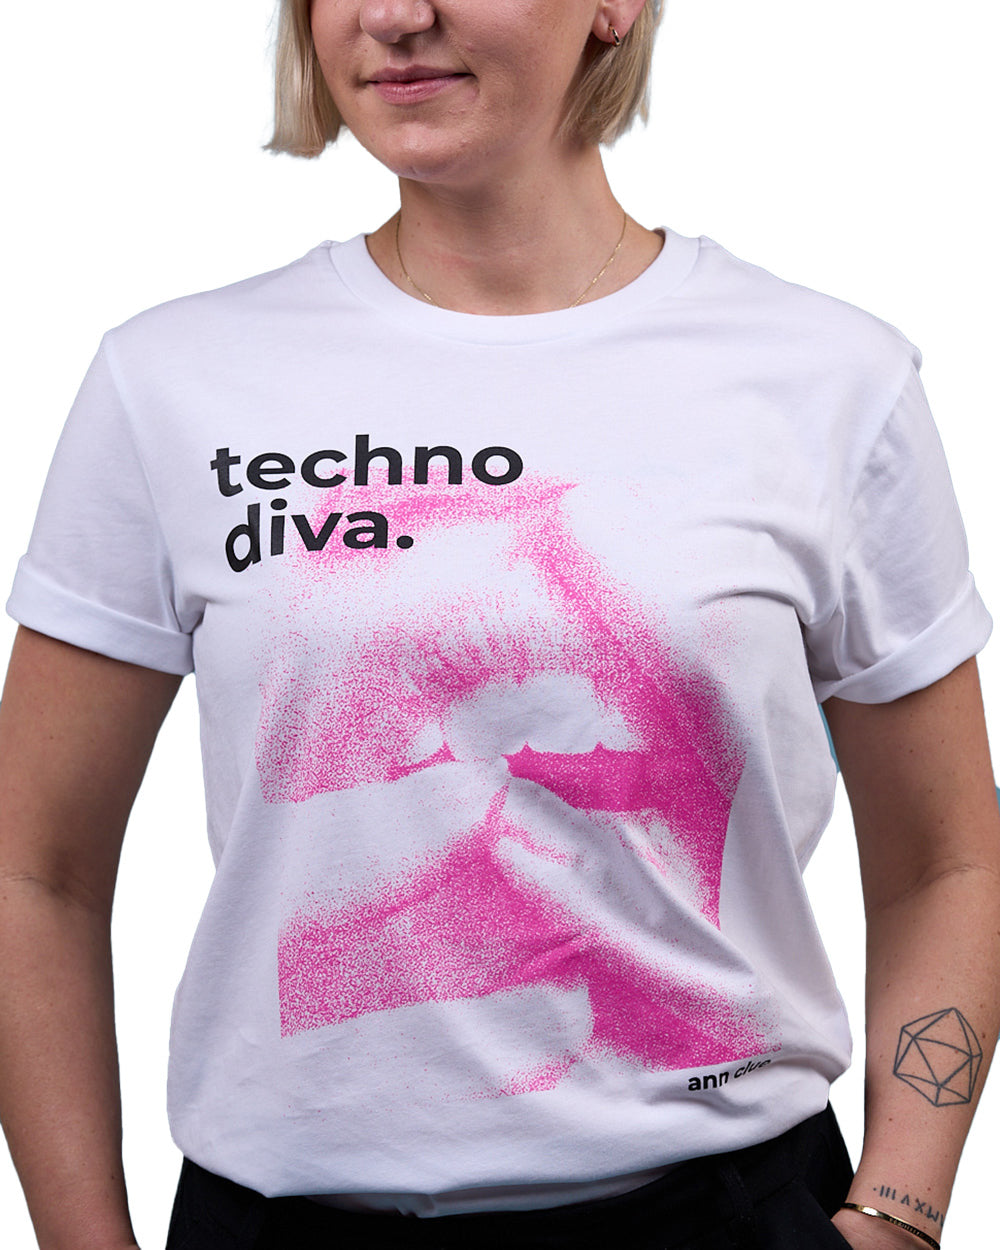 Ann Clue - Techno Diva T-Shirt